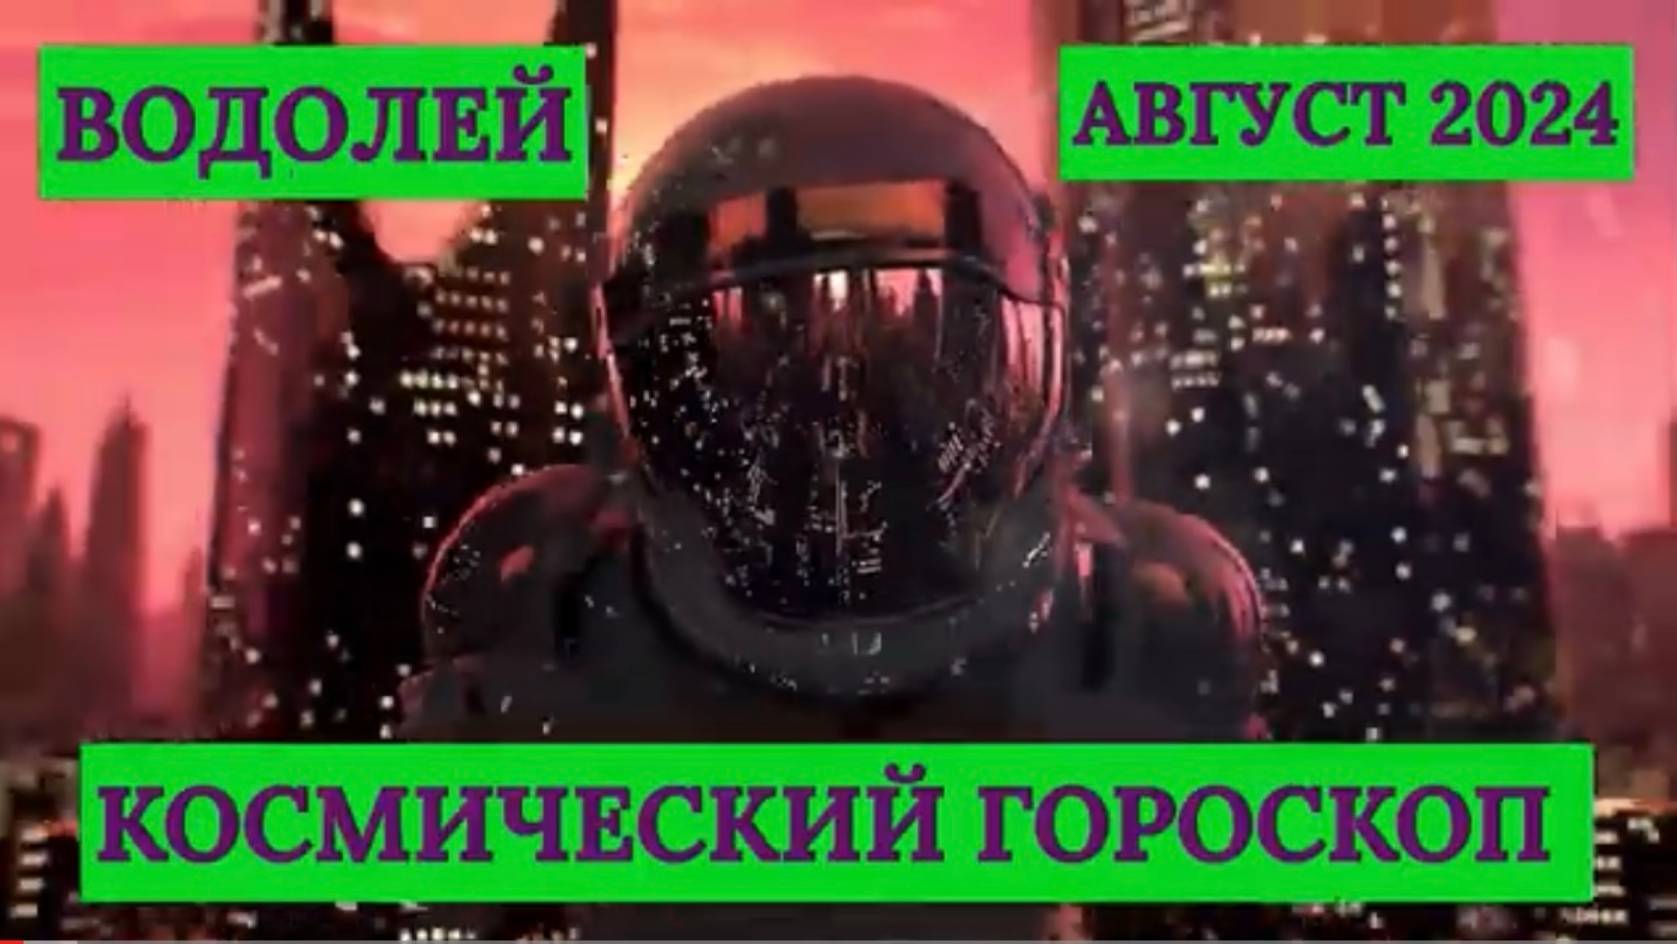 ВОДОЛЕЙ - "КОСМИЧЕСКИЙ ГОРОСКОП на АВГУСТ-2024"